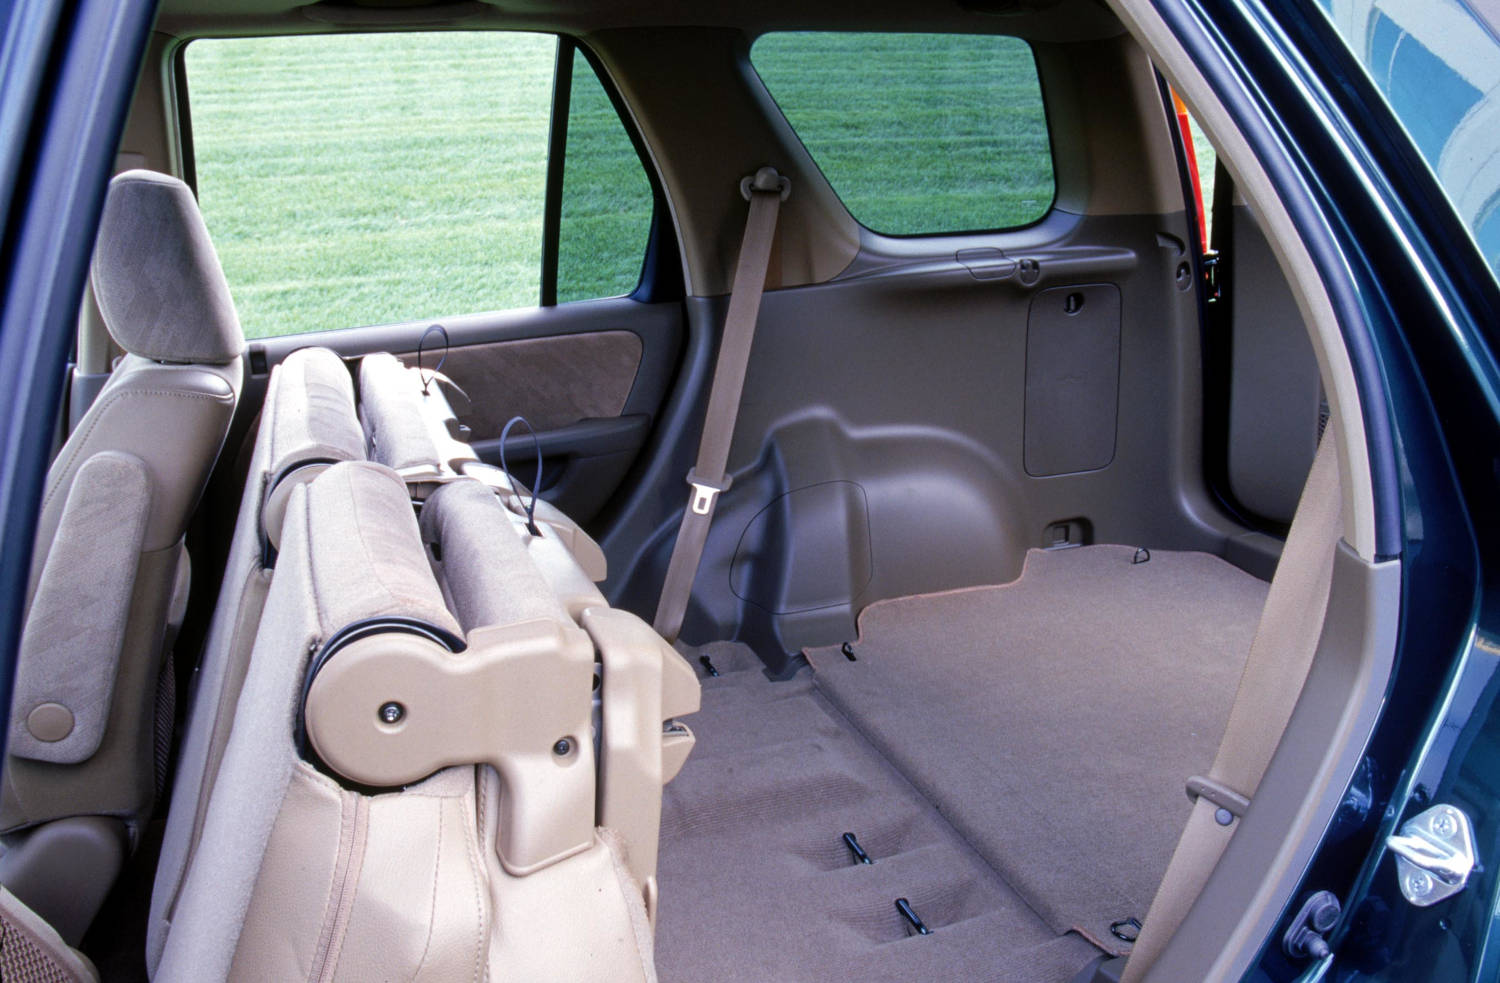 Inside the 2002 Honda CR-V SUV cargo area